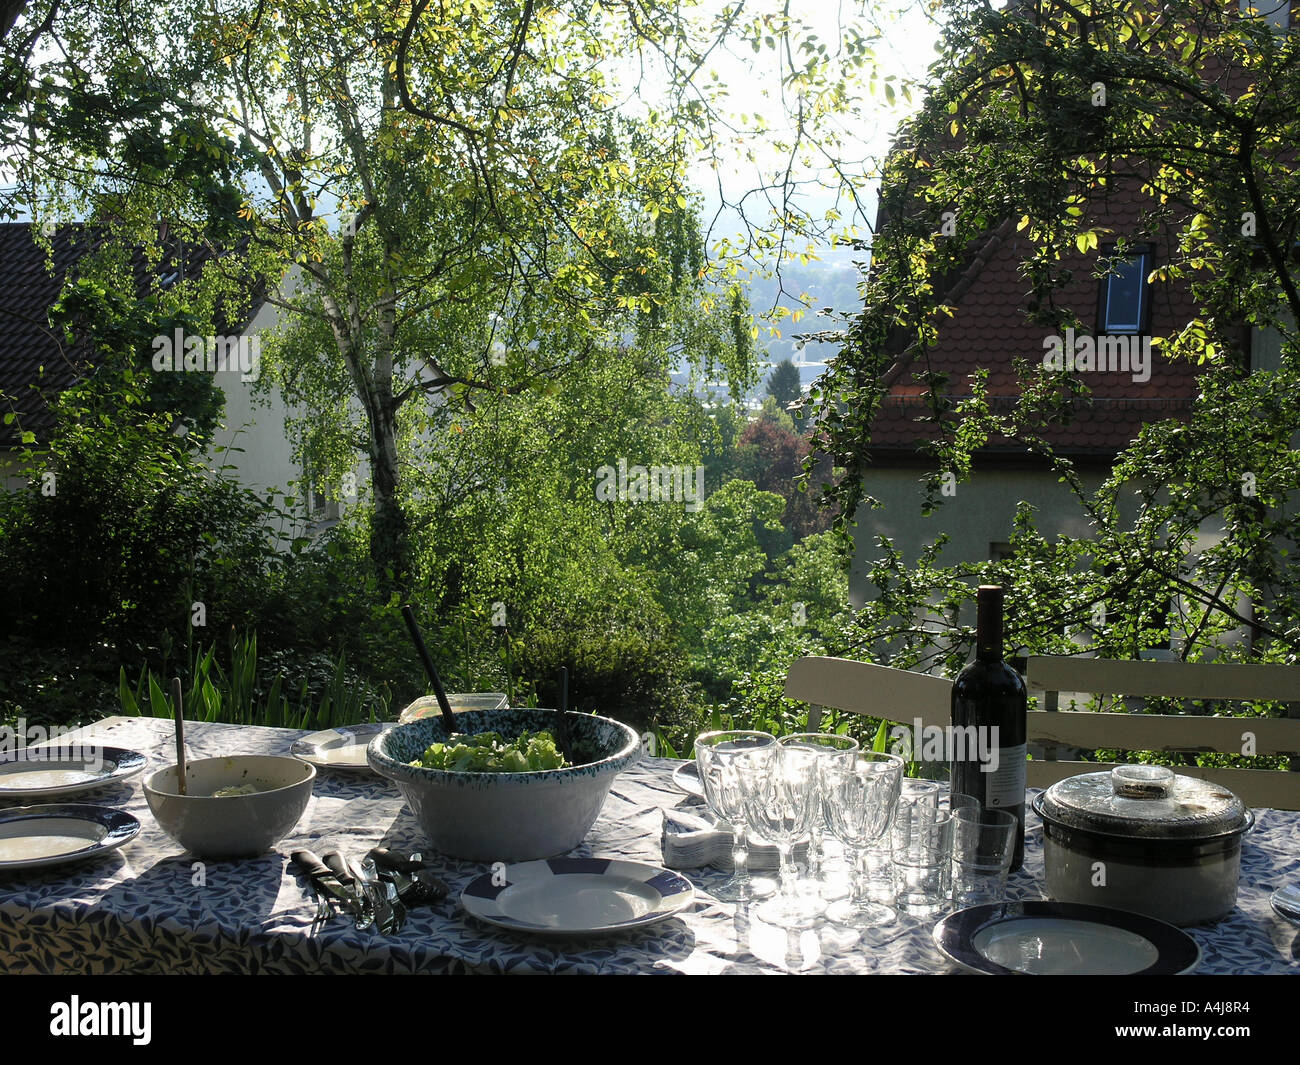 Gedeckter Tisch im Garten, outdoor lunch table in the garden Stock Photo